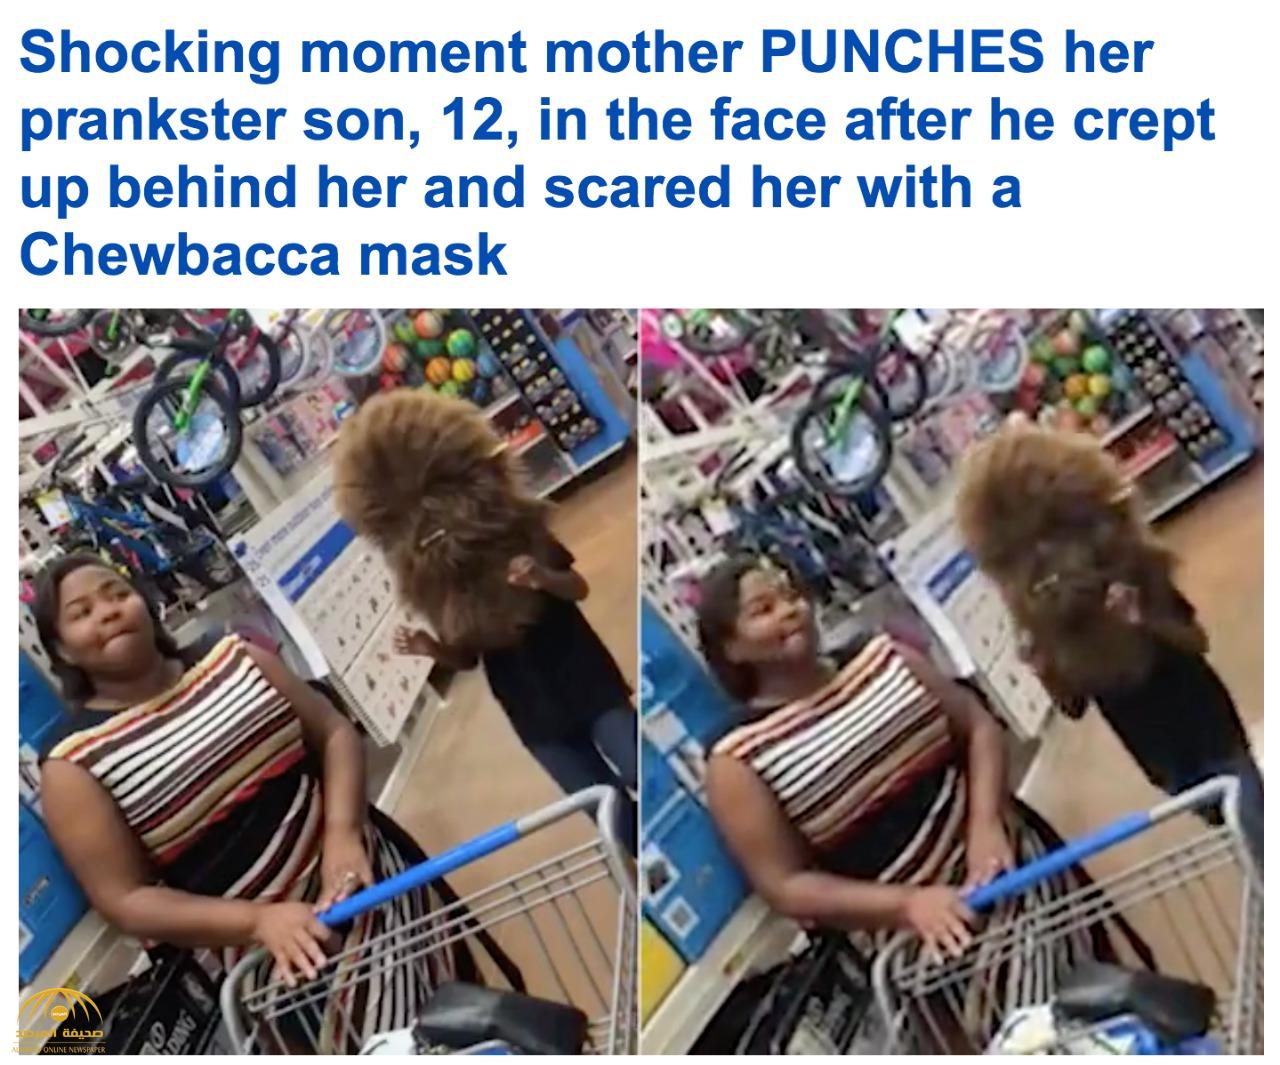 شاهد .. ردة فعل صادمة لأم تجاه ابنها بعدما فاجأها بوجه مخيف داخل مركز تسوق